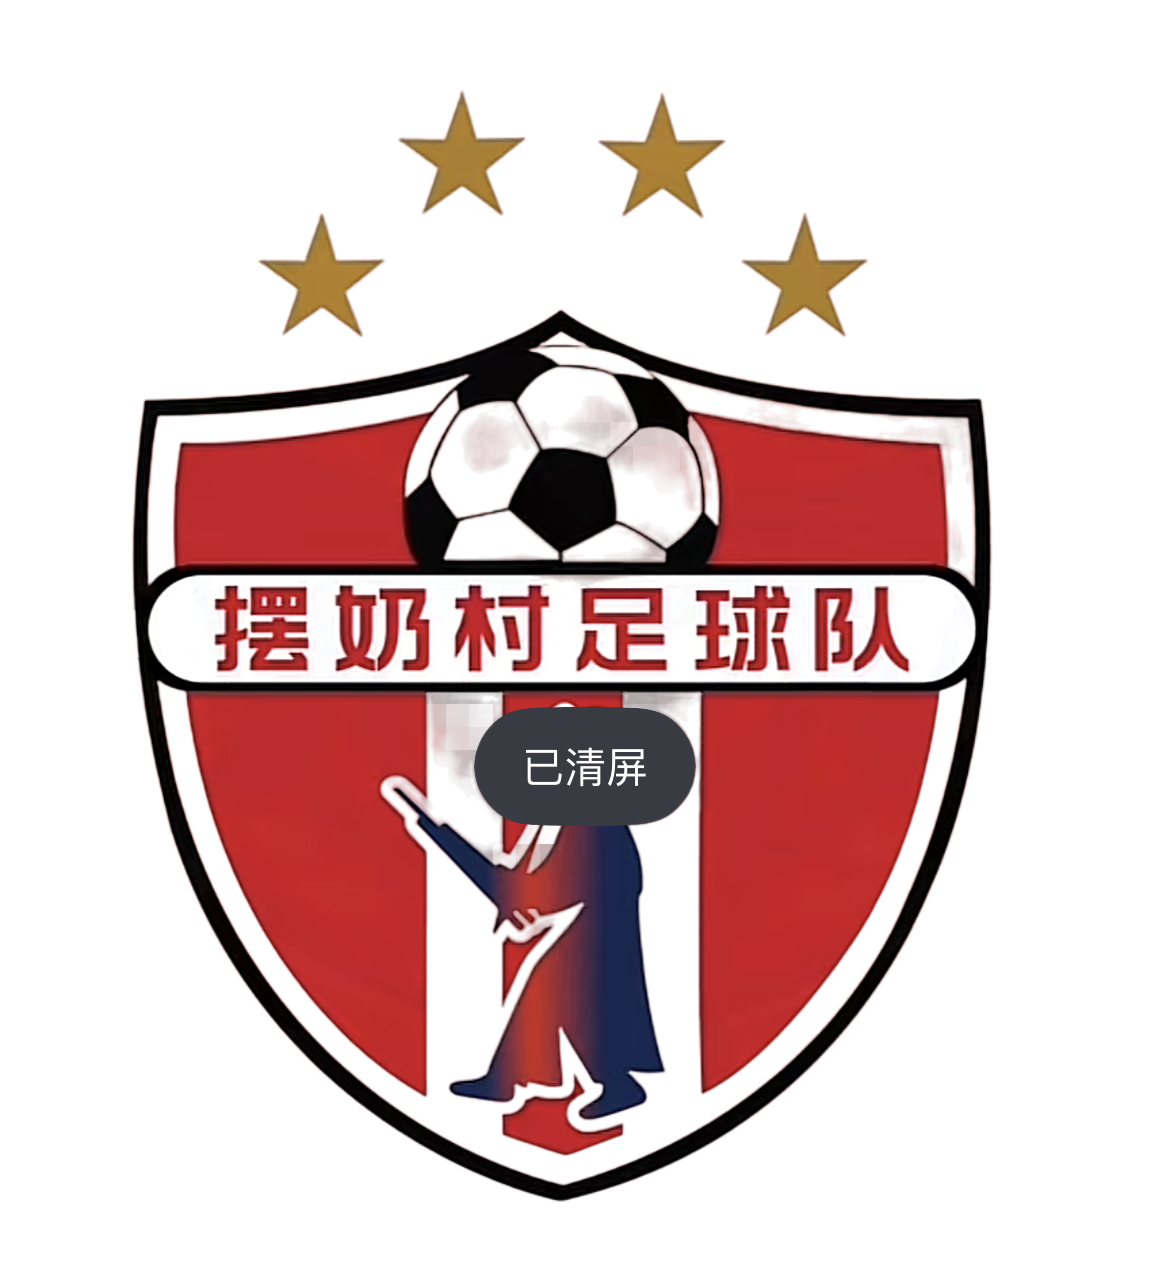 摆奶村足球队 logo